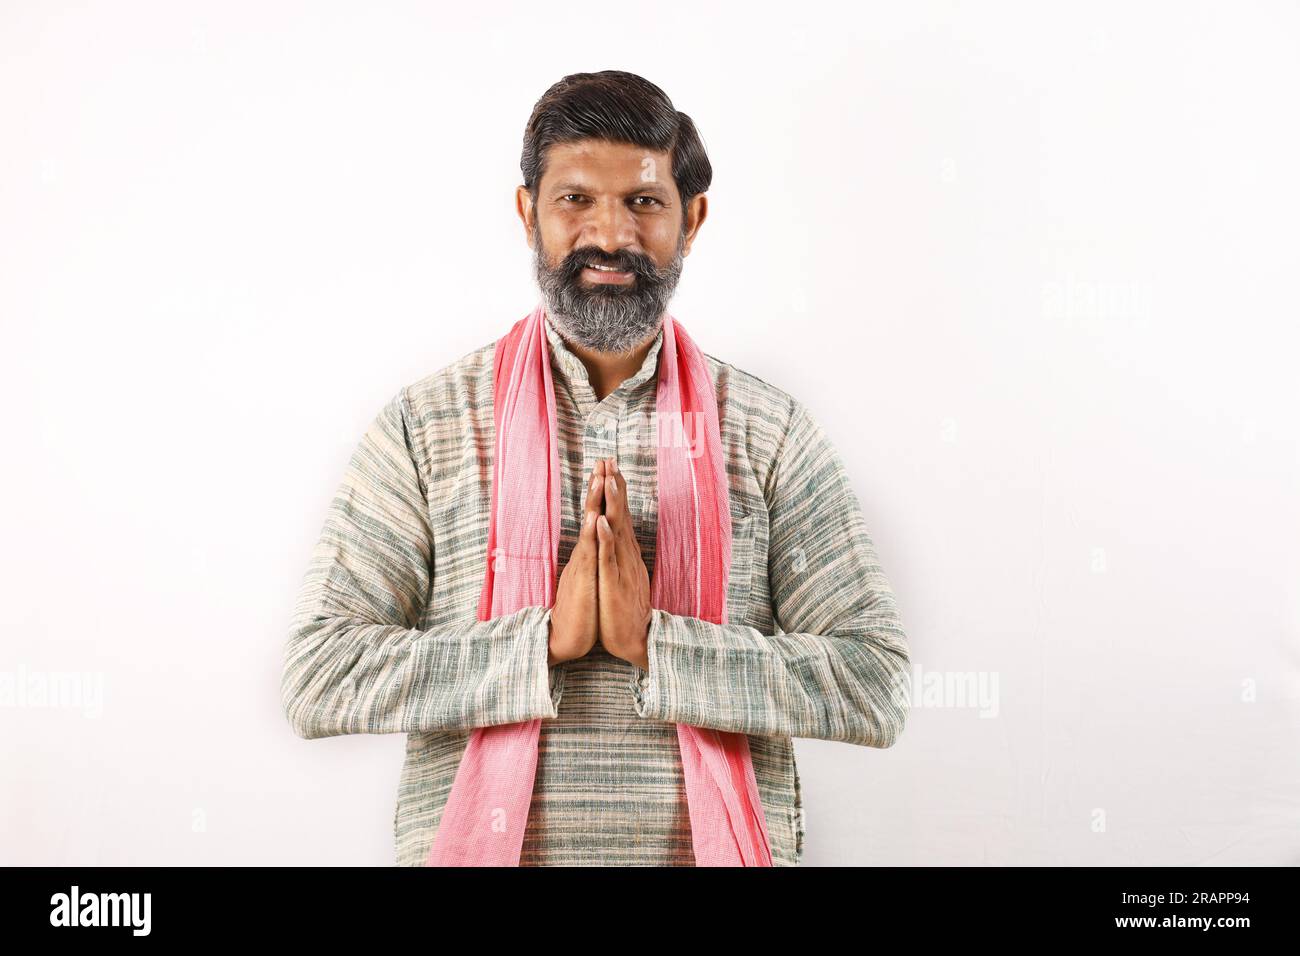 Portrait de l'homme barbu indien dans le concept de l'Inde rurale. Fond blanc des expressions funky. pauvre villageois. diverses expressions et humeurs de pauvreté Banque D'Images